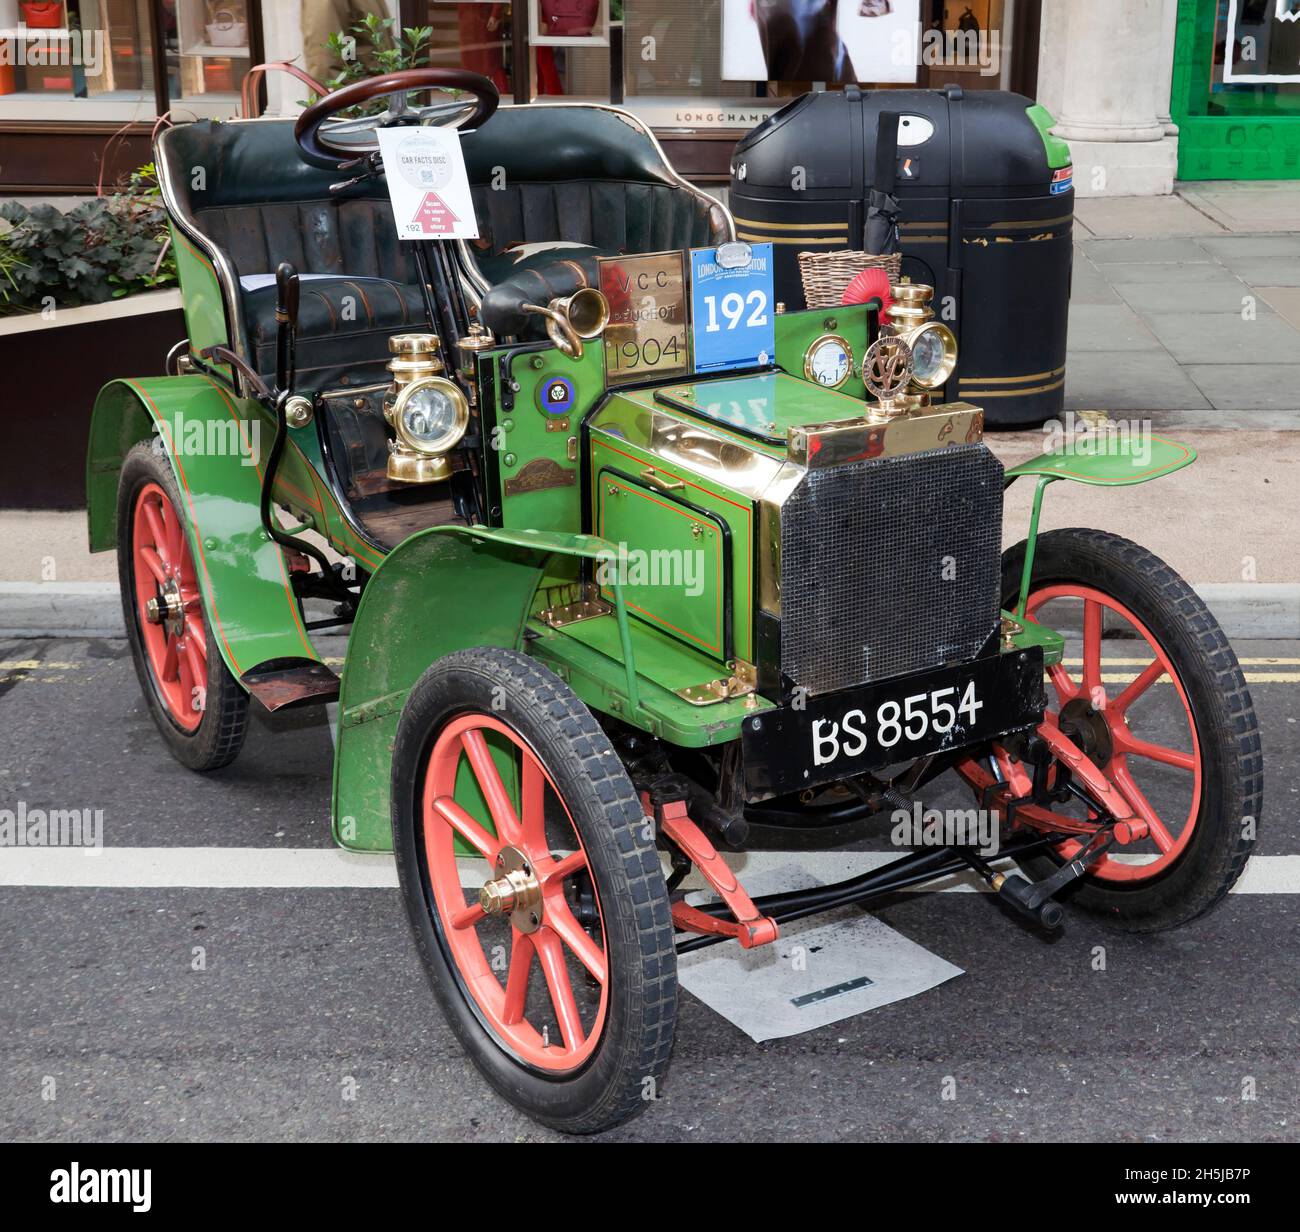 A Green, 1904 ans, Peugeot deux places, prenant part au salon automobile Regents Street Concours d'élégance, novembre 2021 Banque D'Images